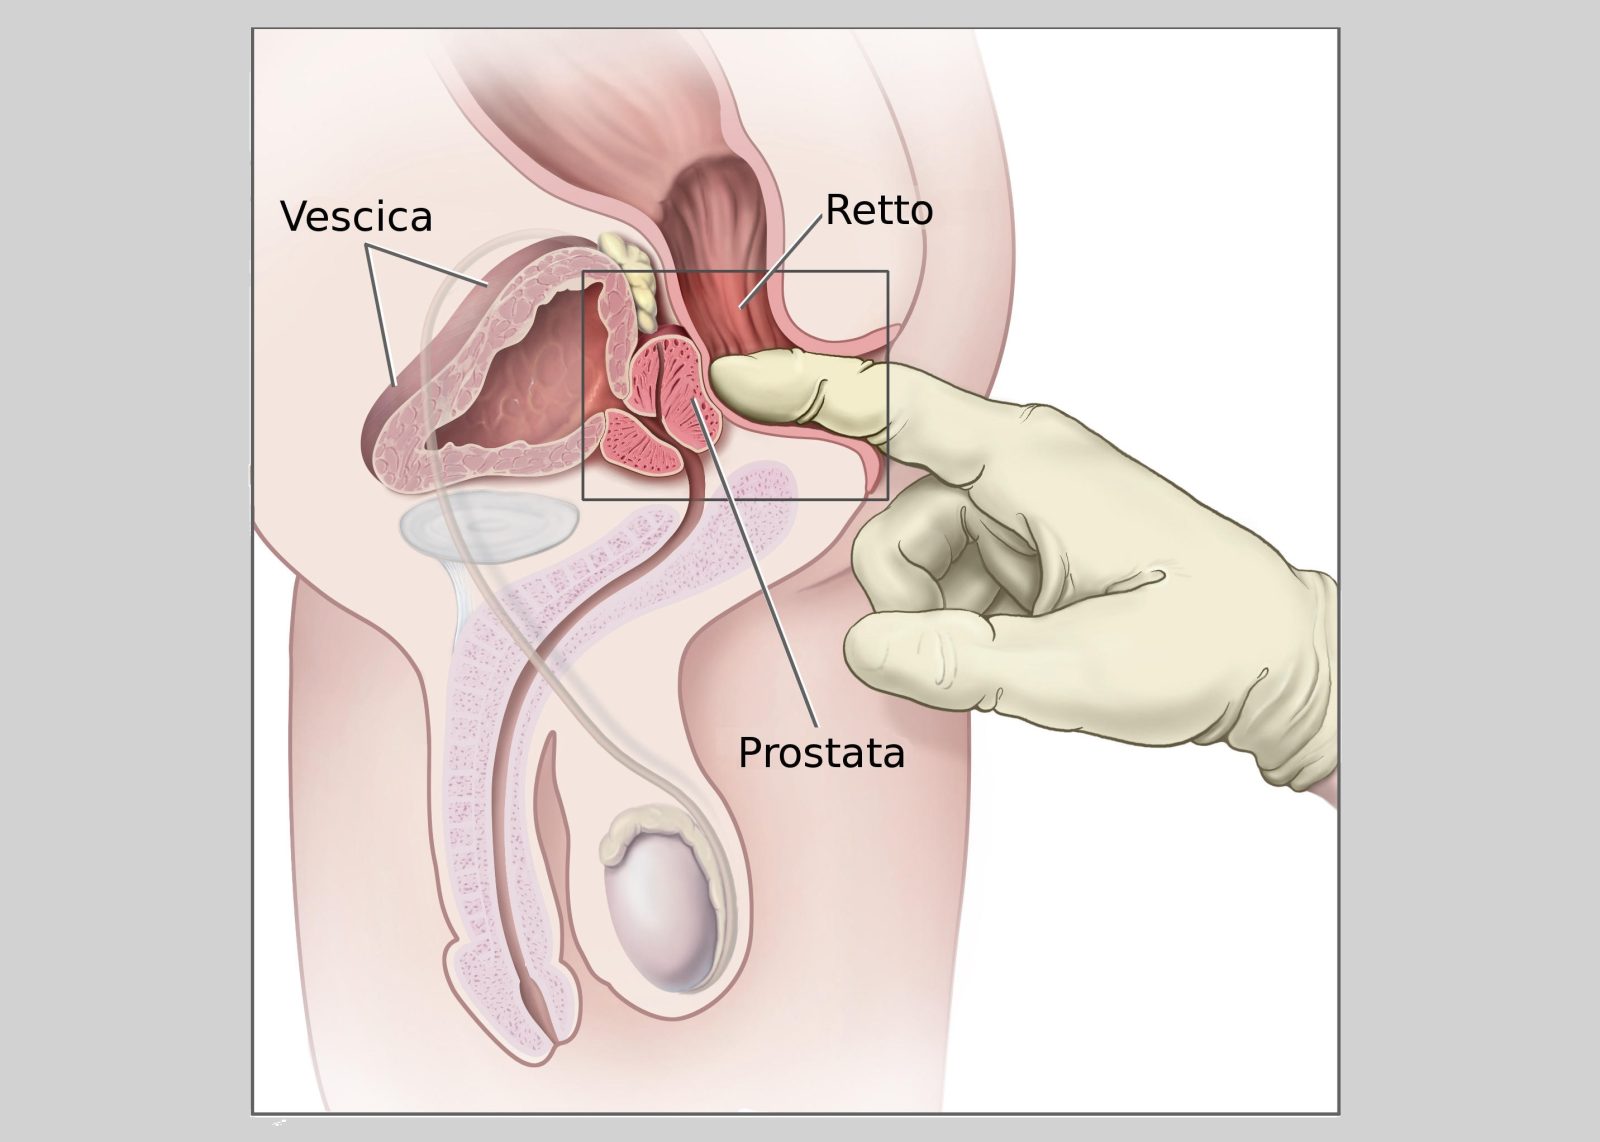 iniezioni prostata dacă este diagnosticat cu prostatită cronică